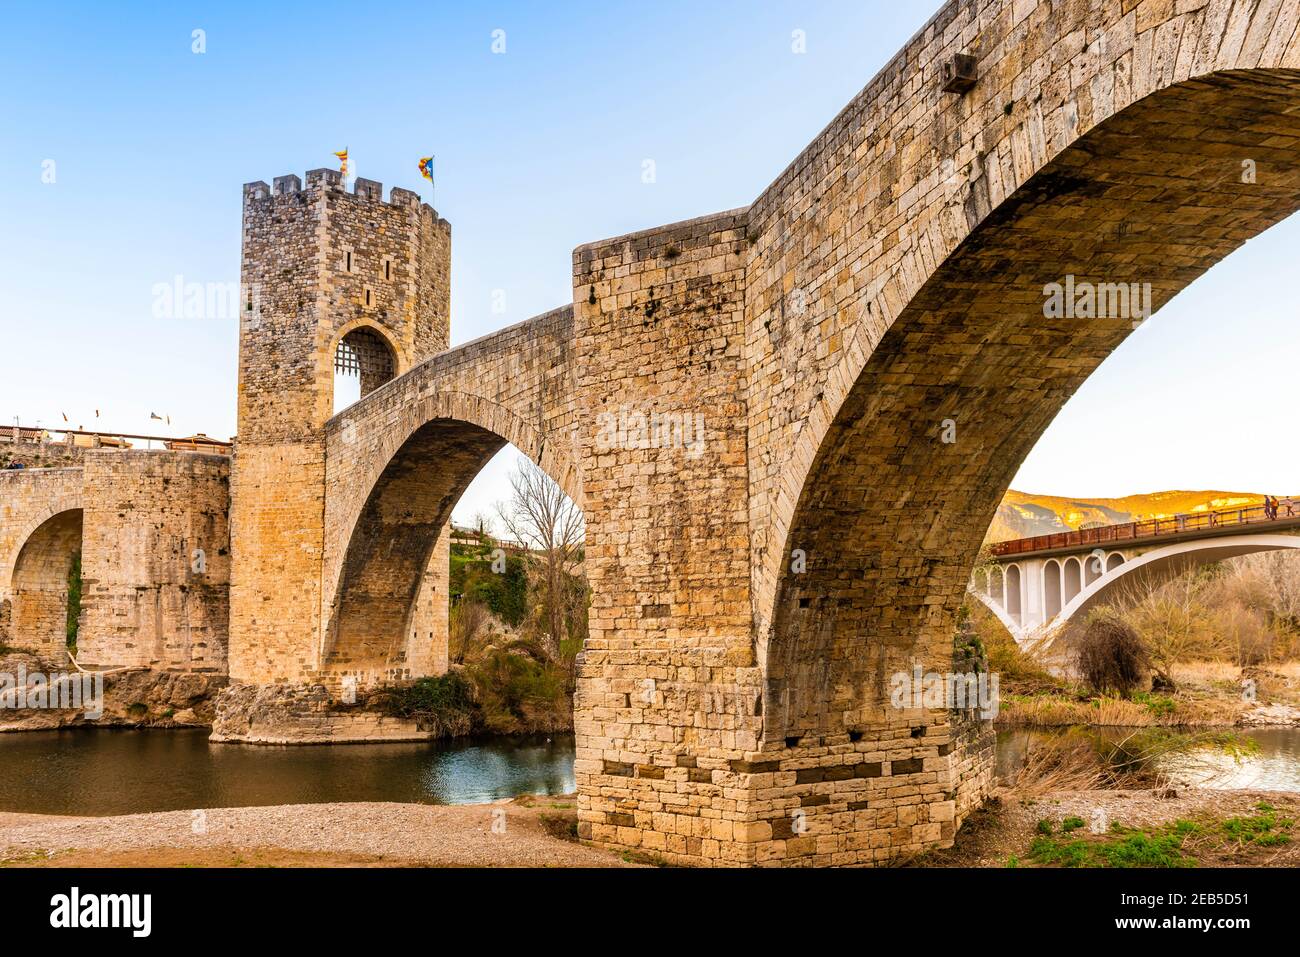 Medieval fortified bridge of Besalu in Catalonia, Spain Stock Photo